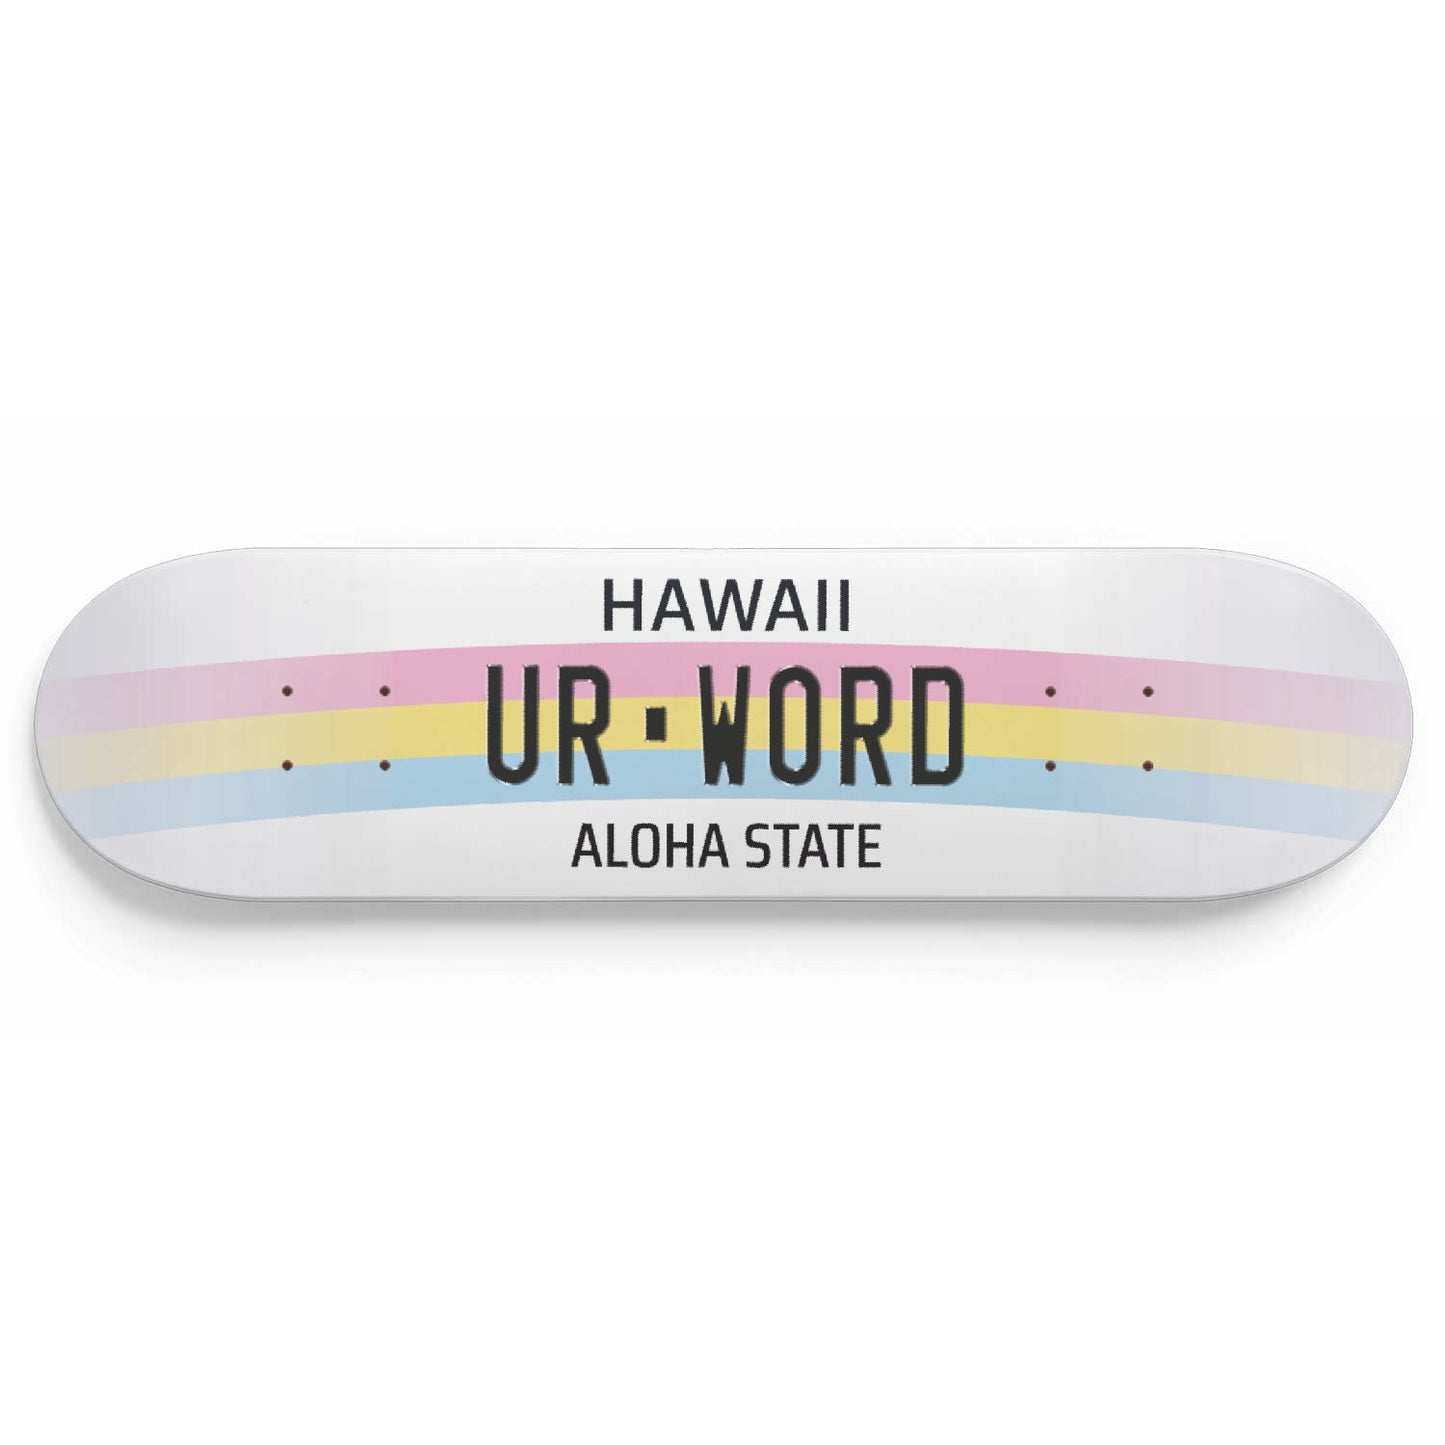 Personalised License Plates Hawaii (USA) - Skater Wall